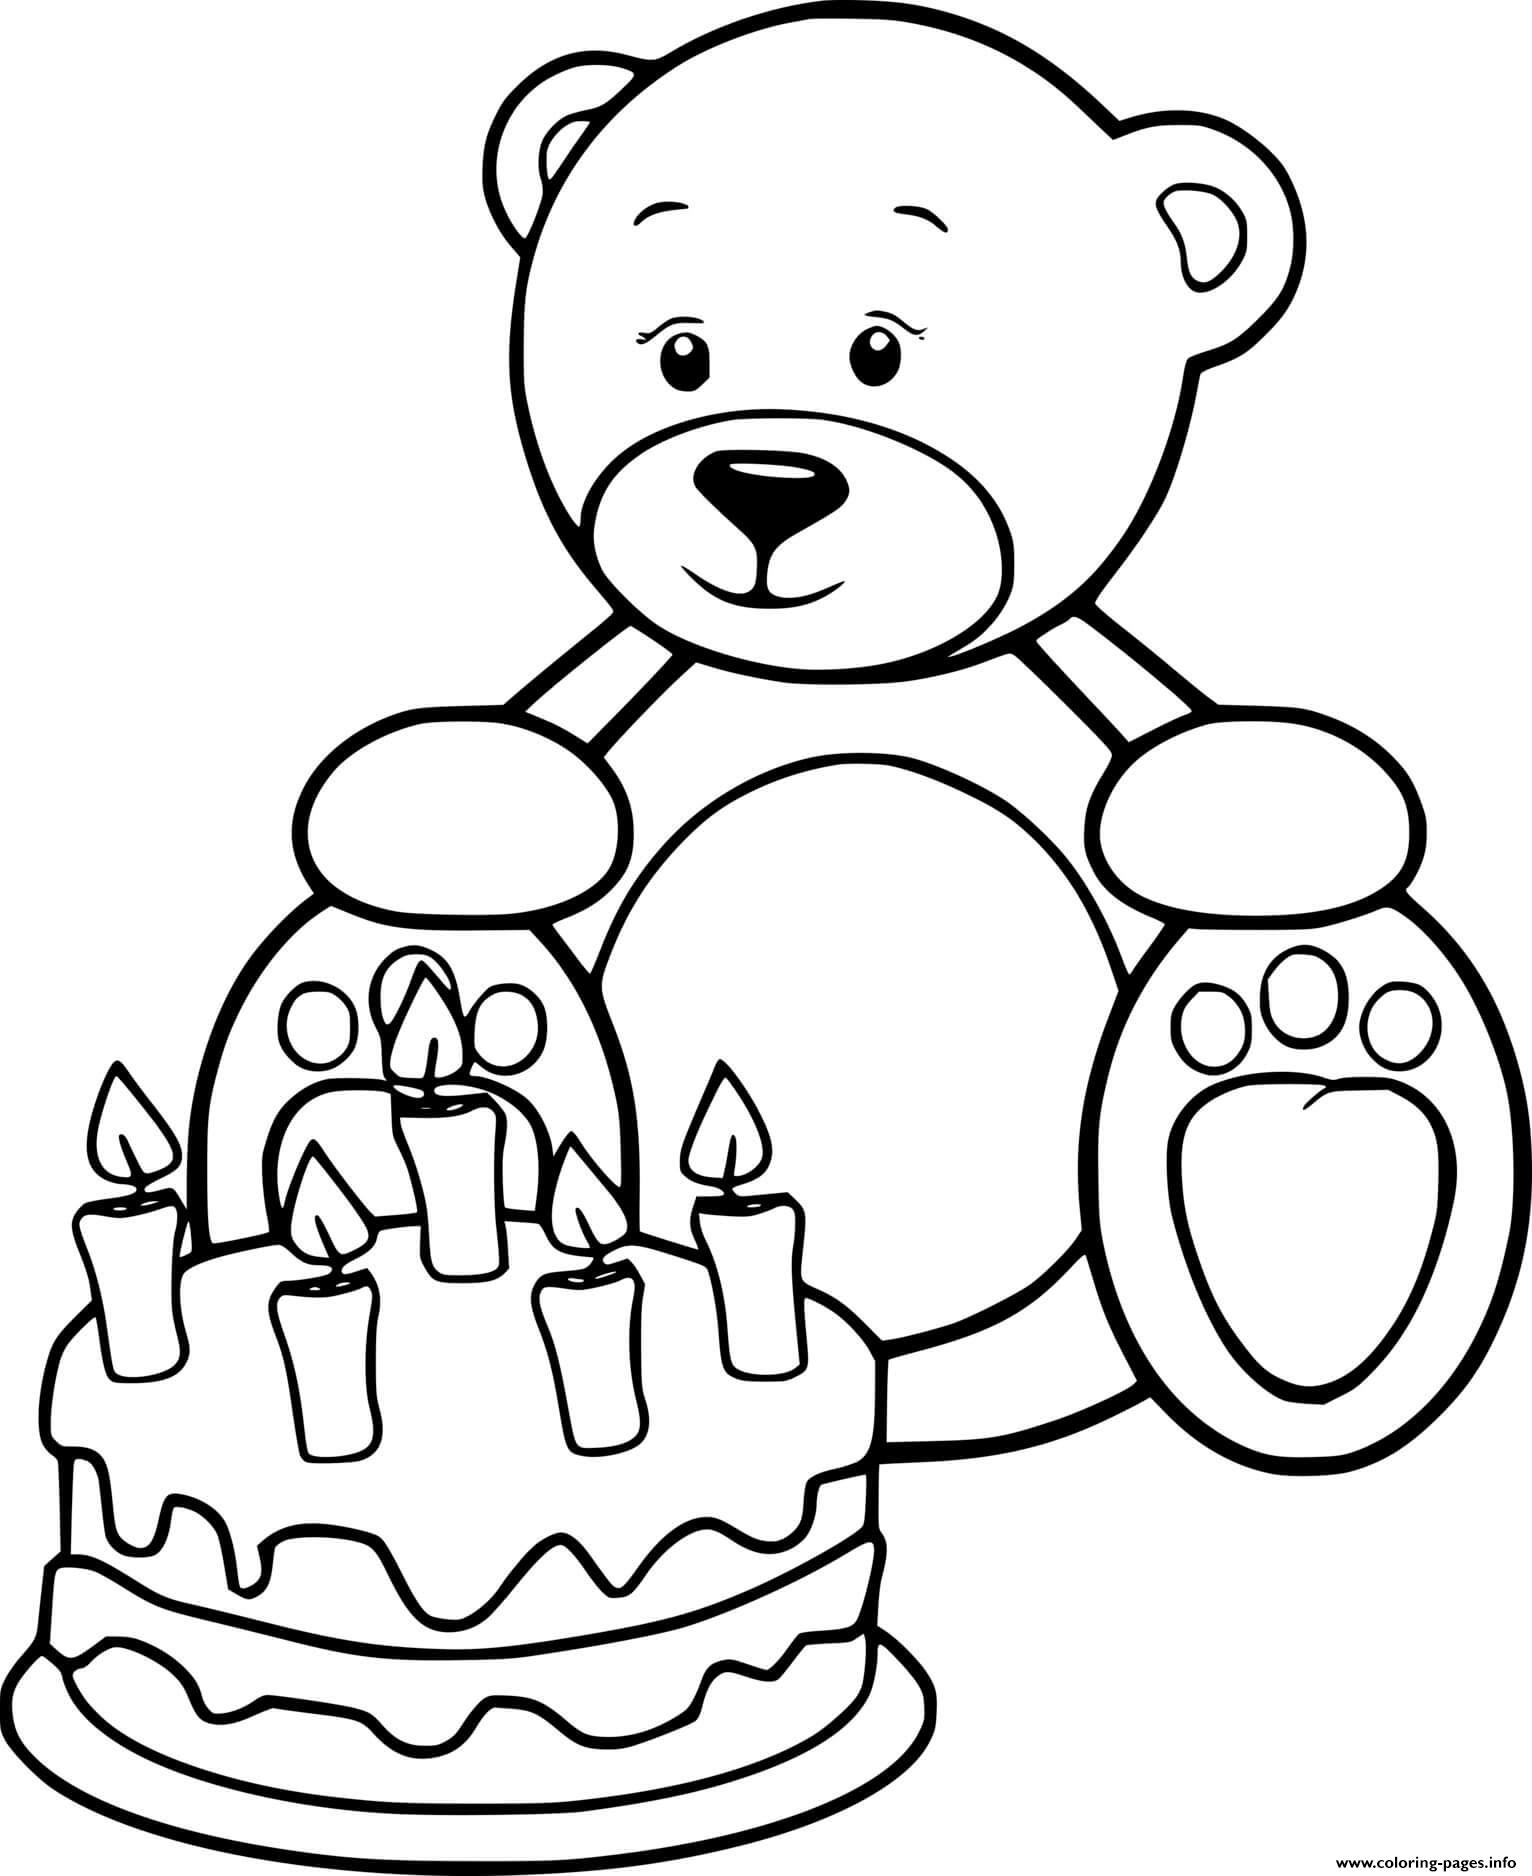 Раскраска Медвежонок с днем рождения